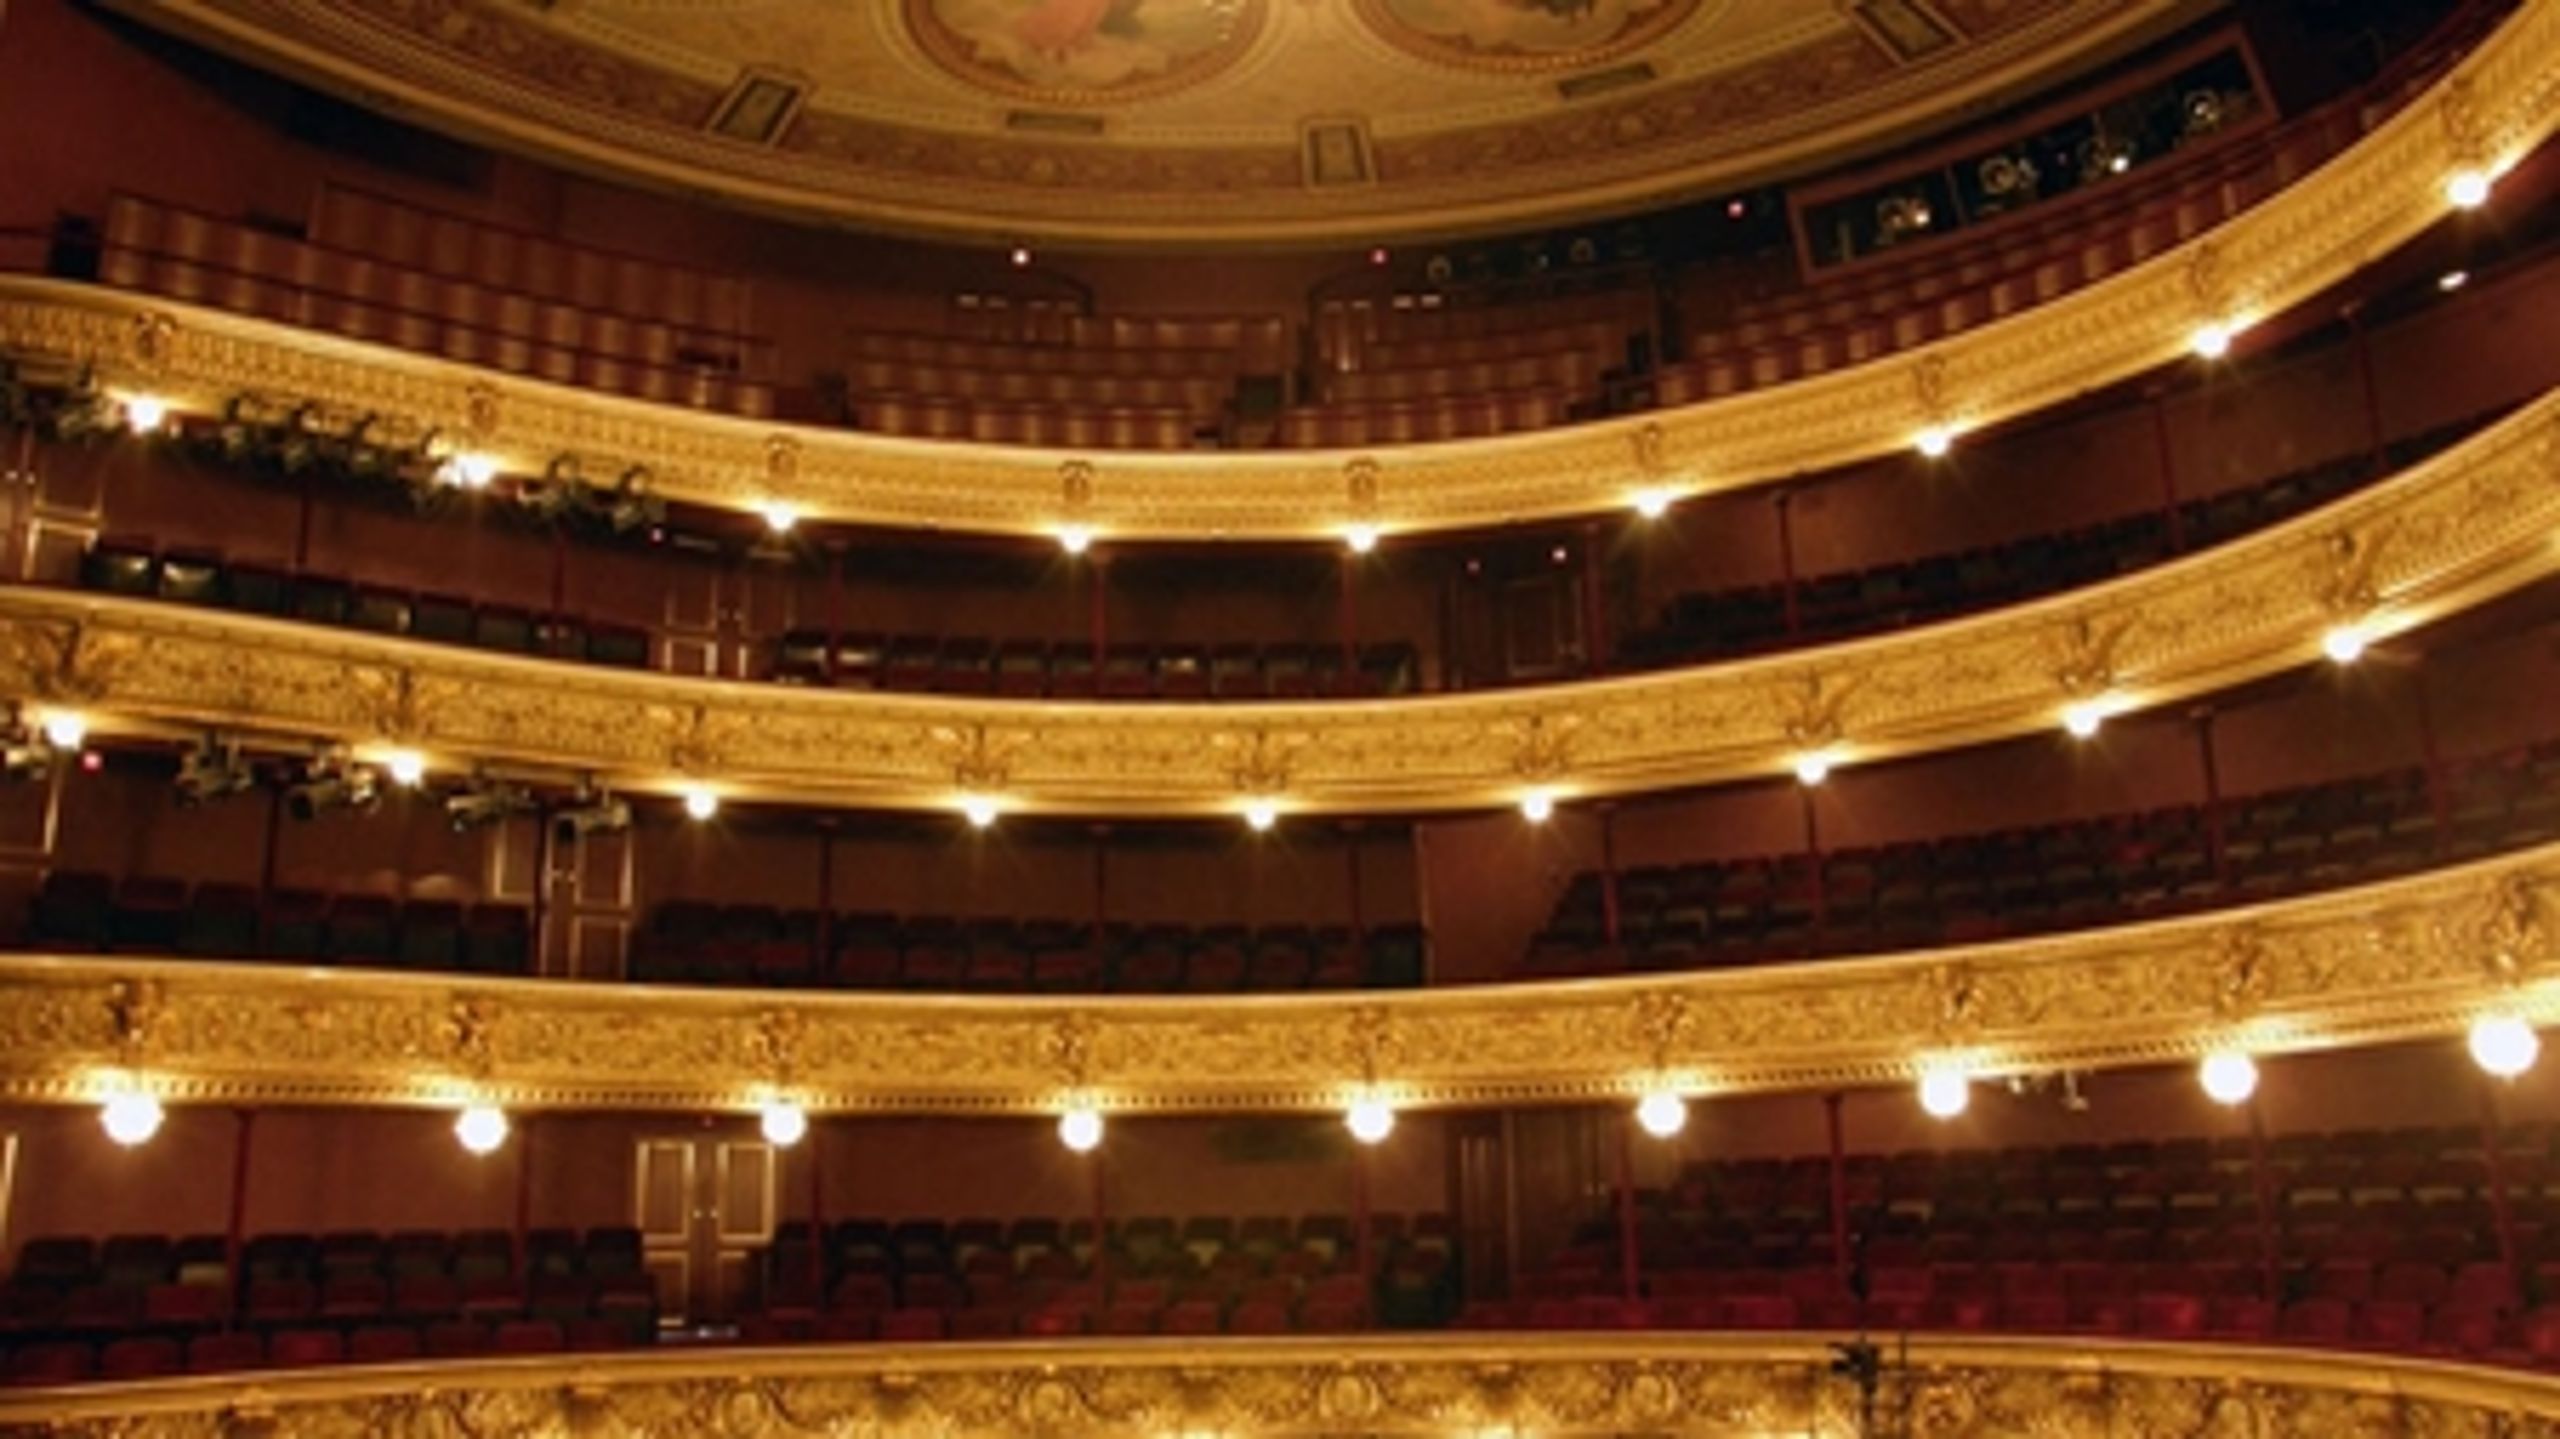 Fra 2009-2013 modtog Det Kongelige Teater 222,7 millioner kroner i støtte fra private fonde, skriver Kulturministeriet.